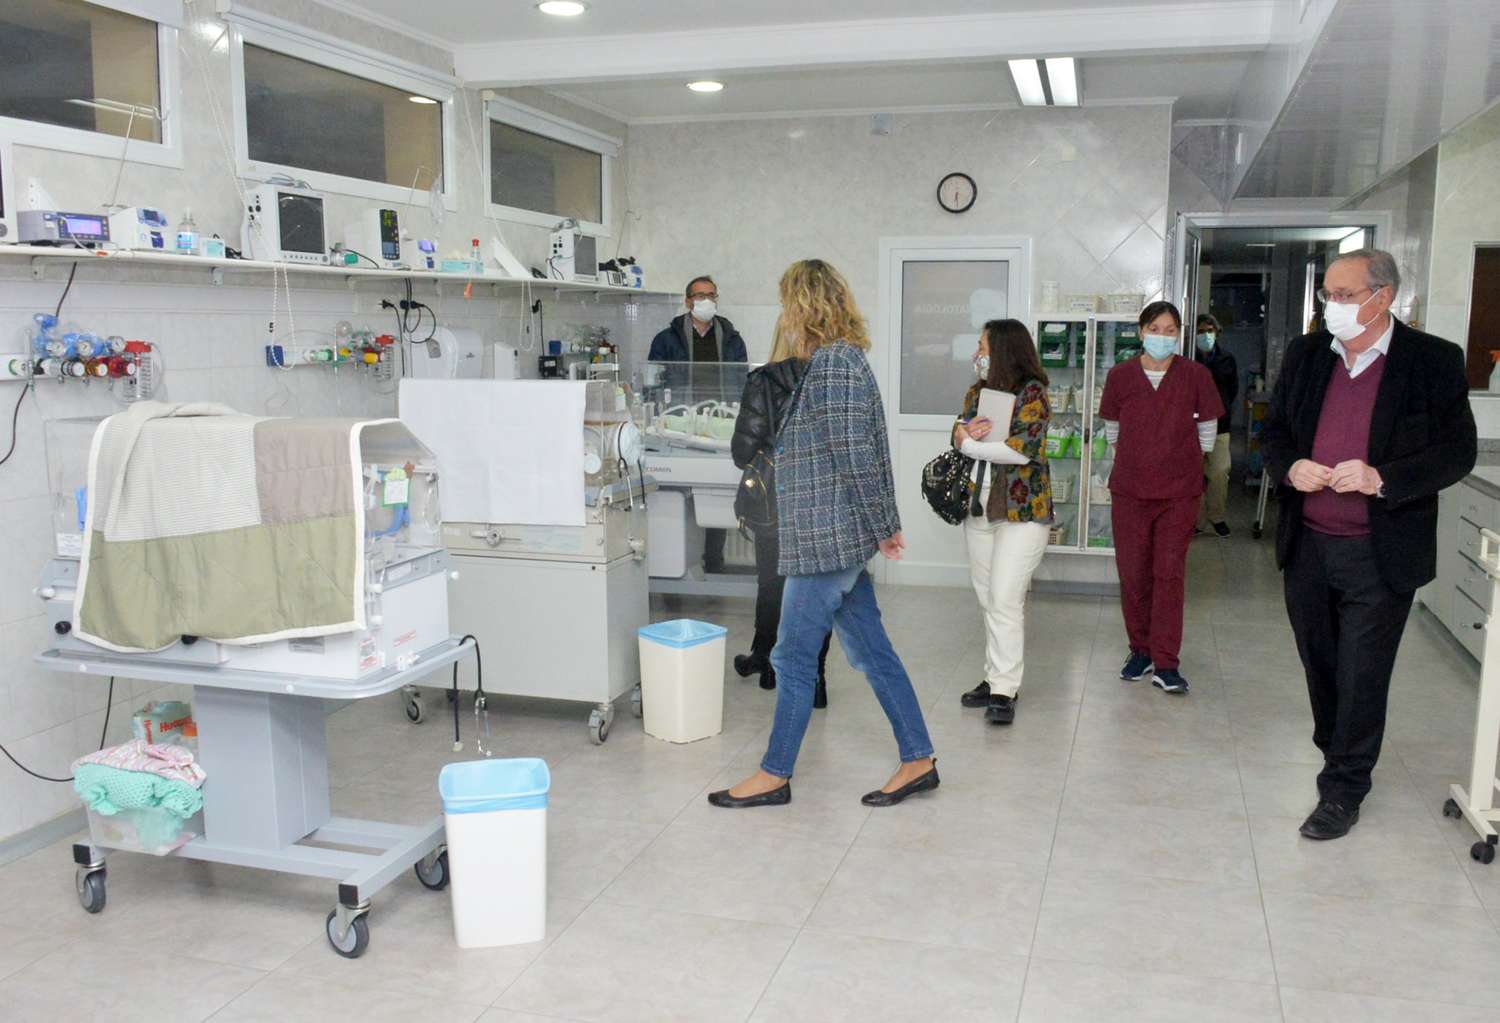 El Intendente guió una visita por seis servicios del Hospital Santamarina para mostrar obras e inversiones